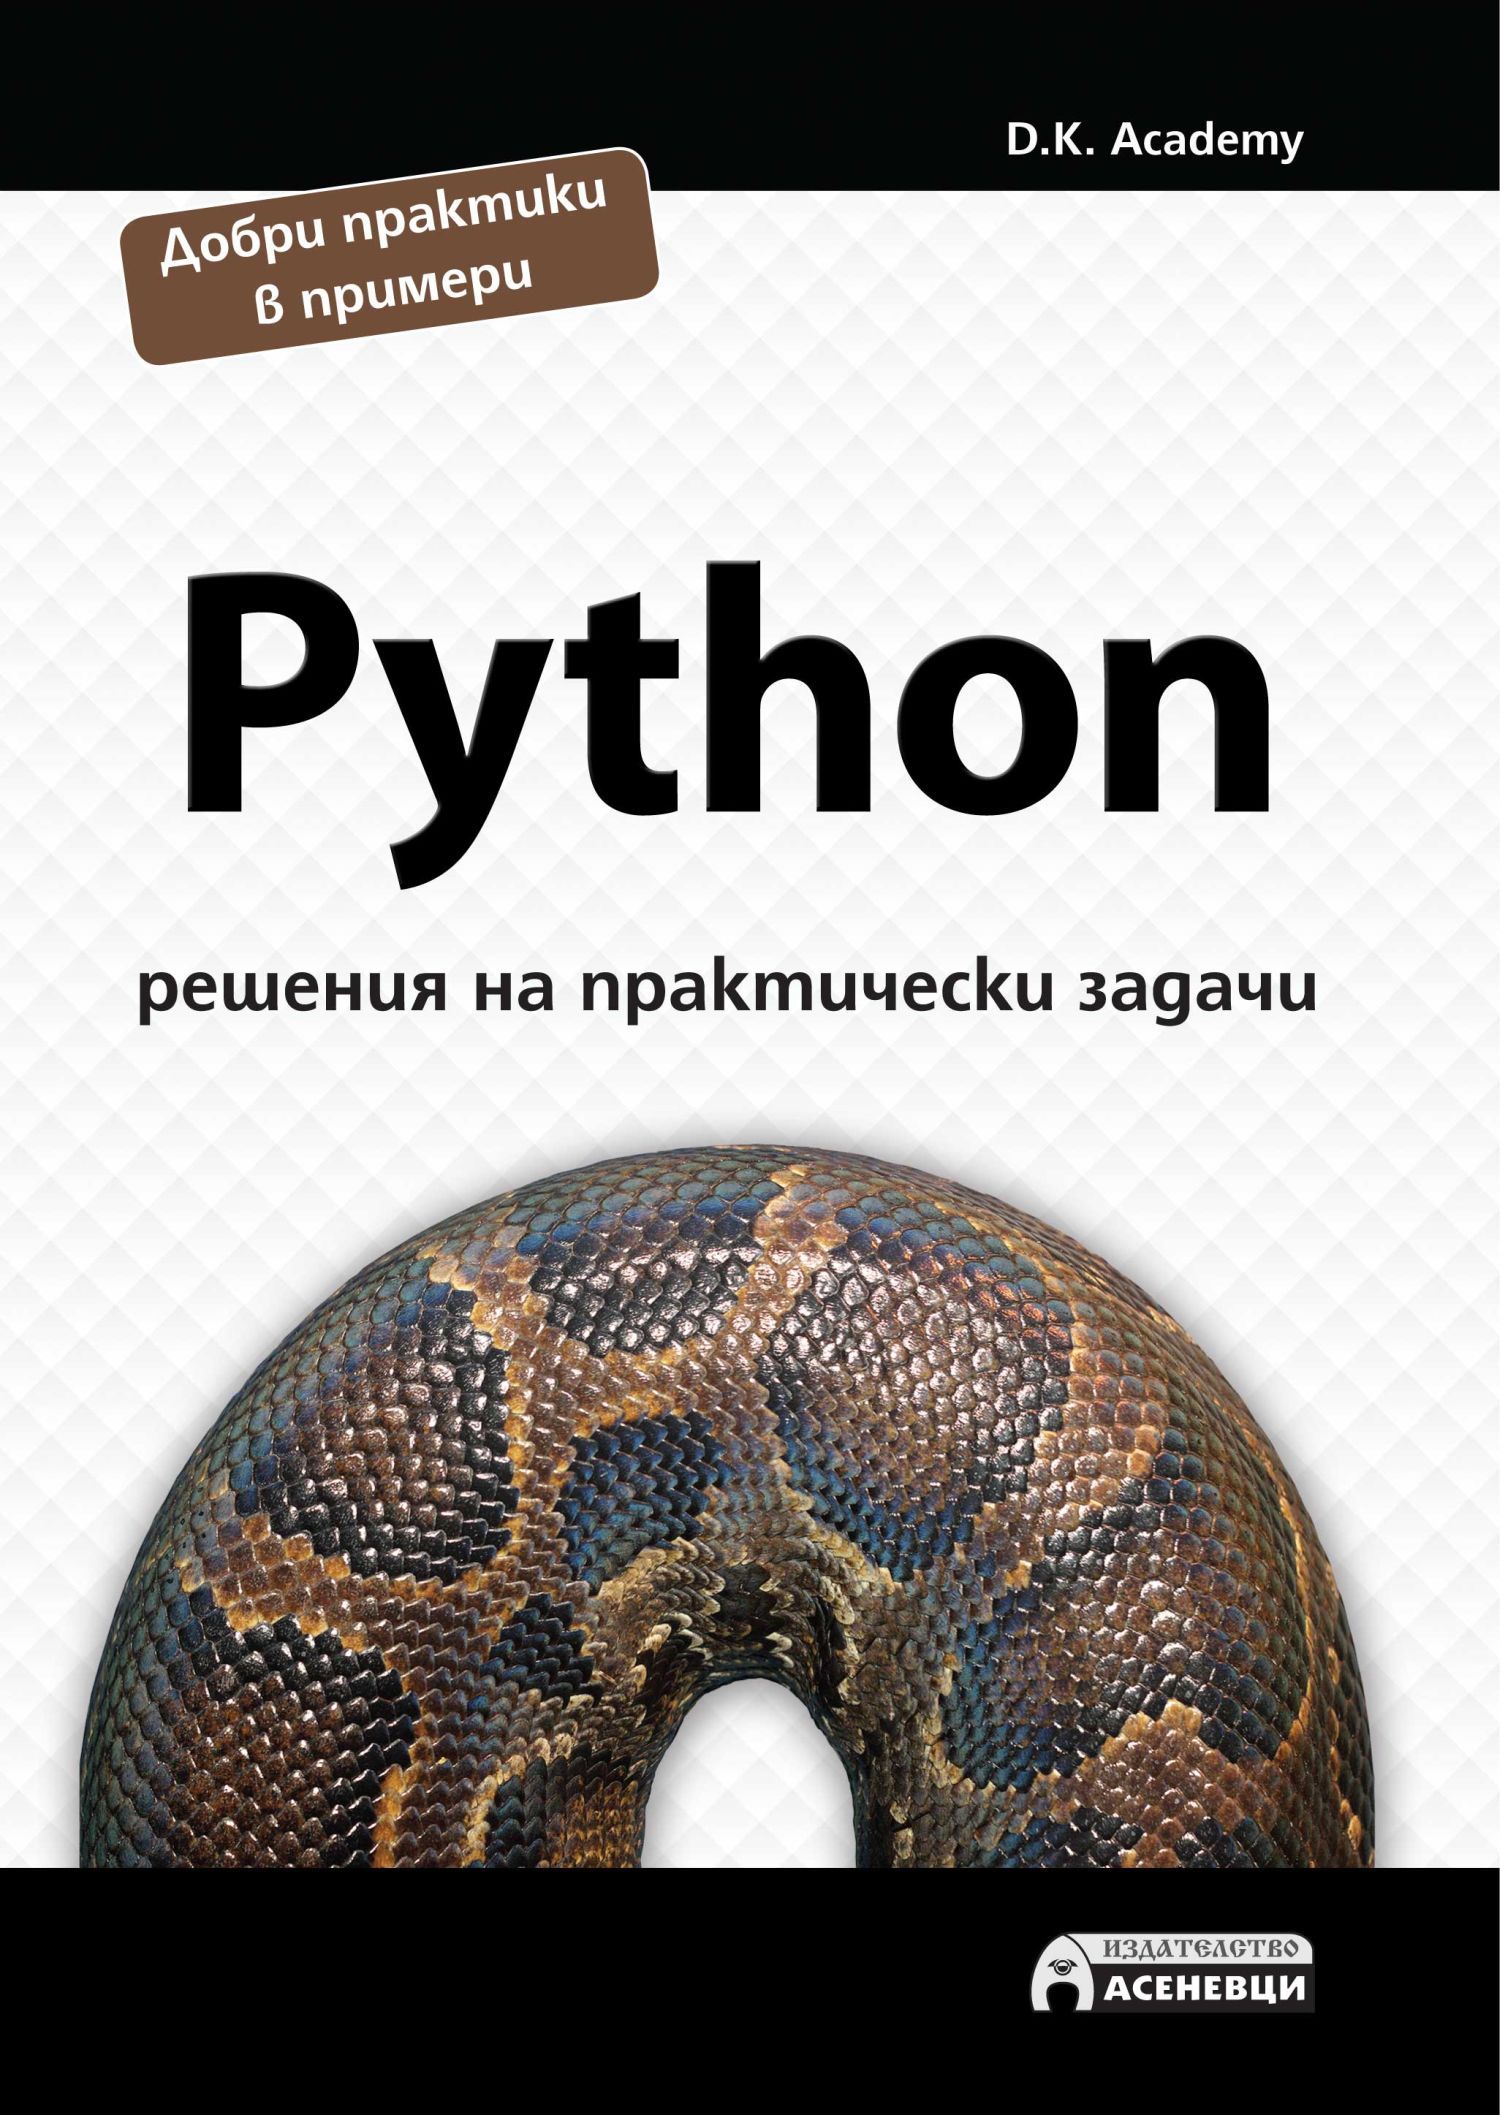 9 задание питоном. Задачи питон. Книги по Python для начинающих. Задания для питона для начинающих. Задачи на питоне с решением.